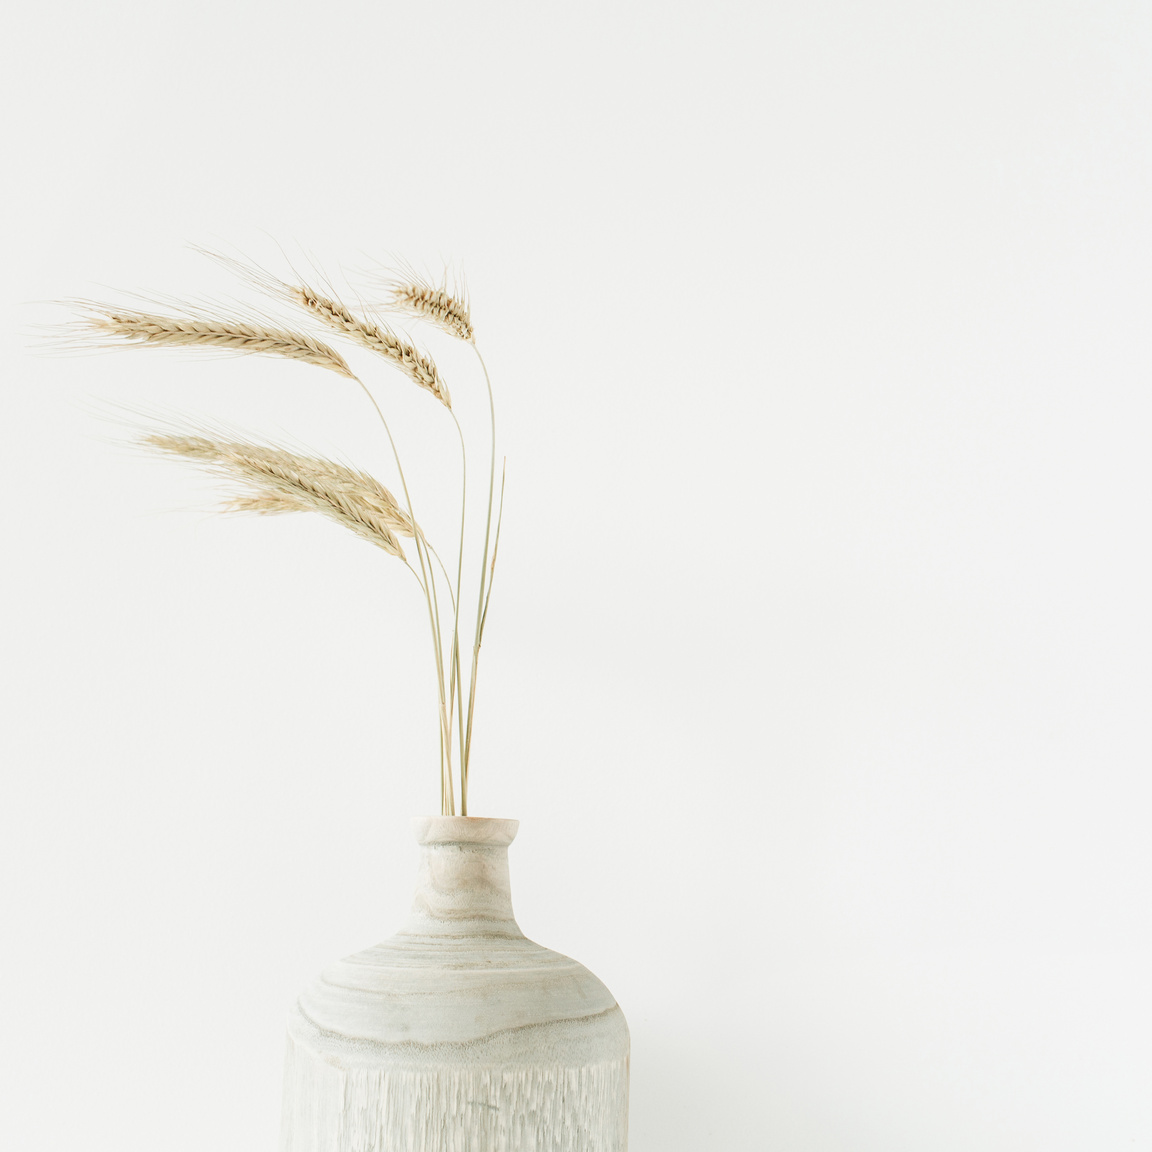 Wheat Ears in a Vase